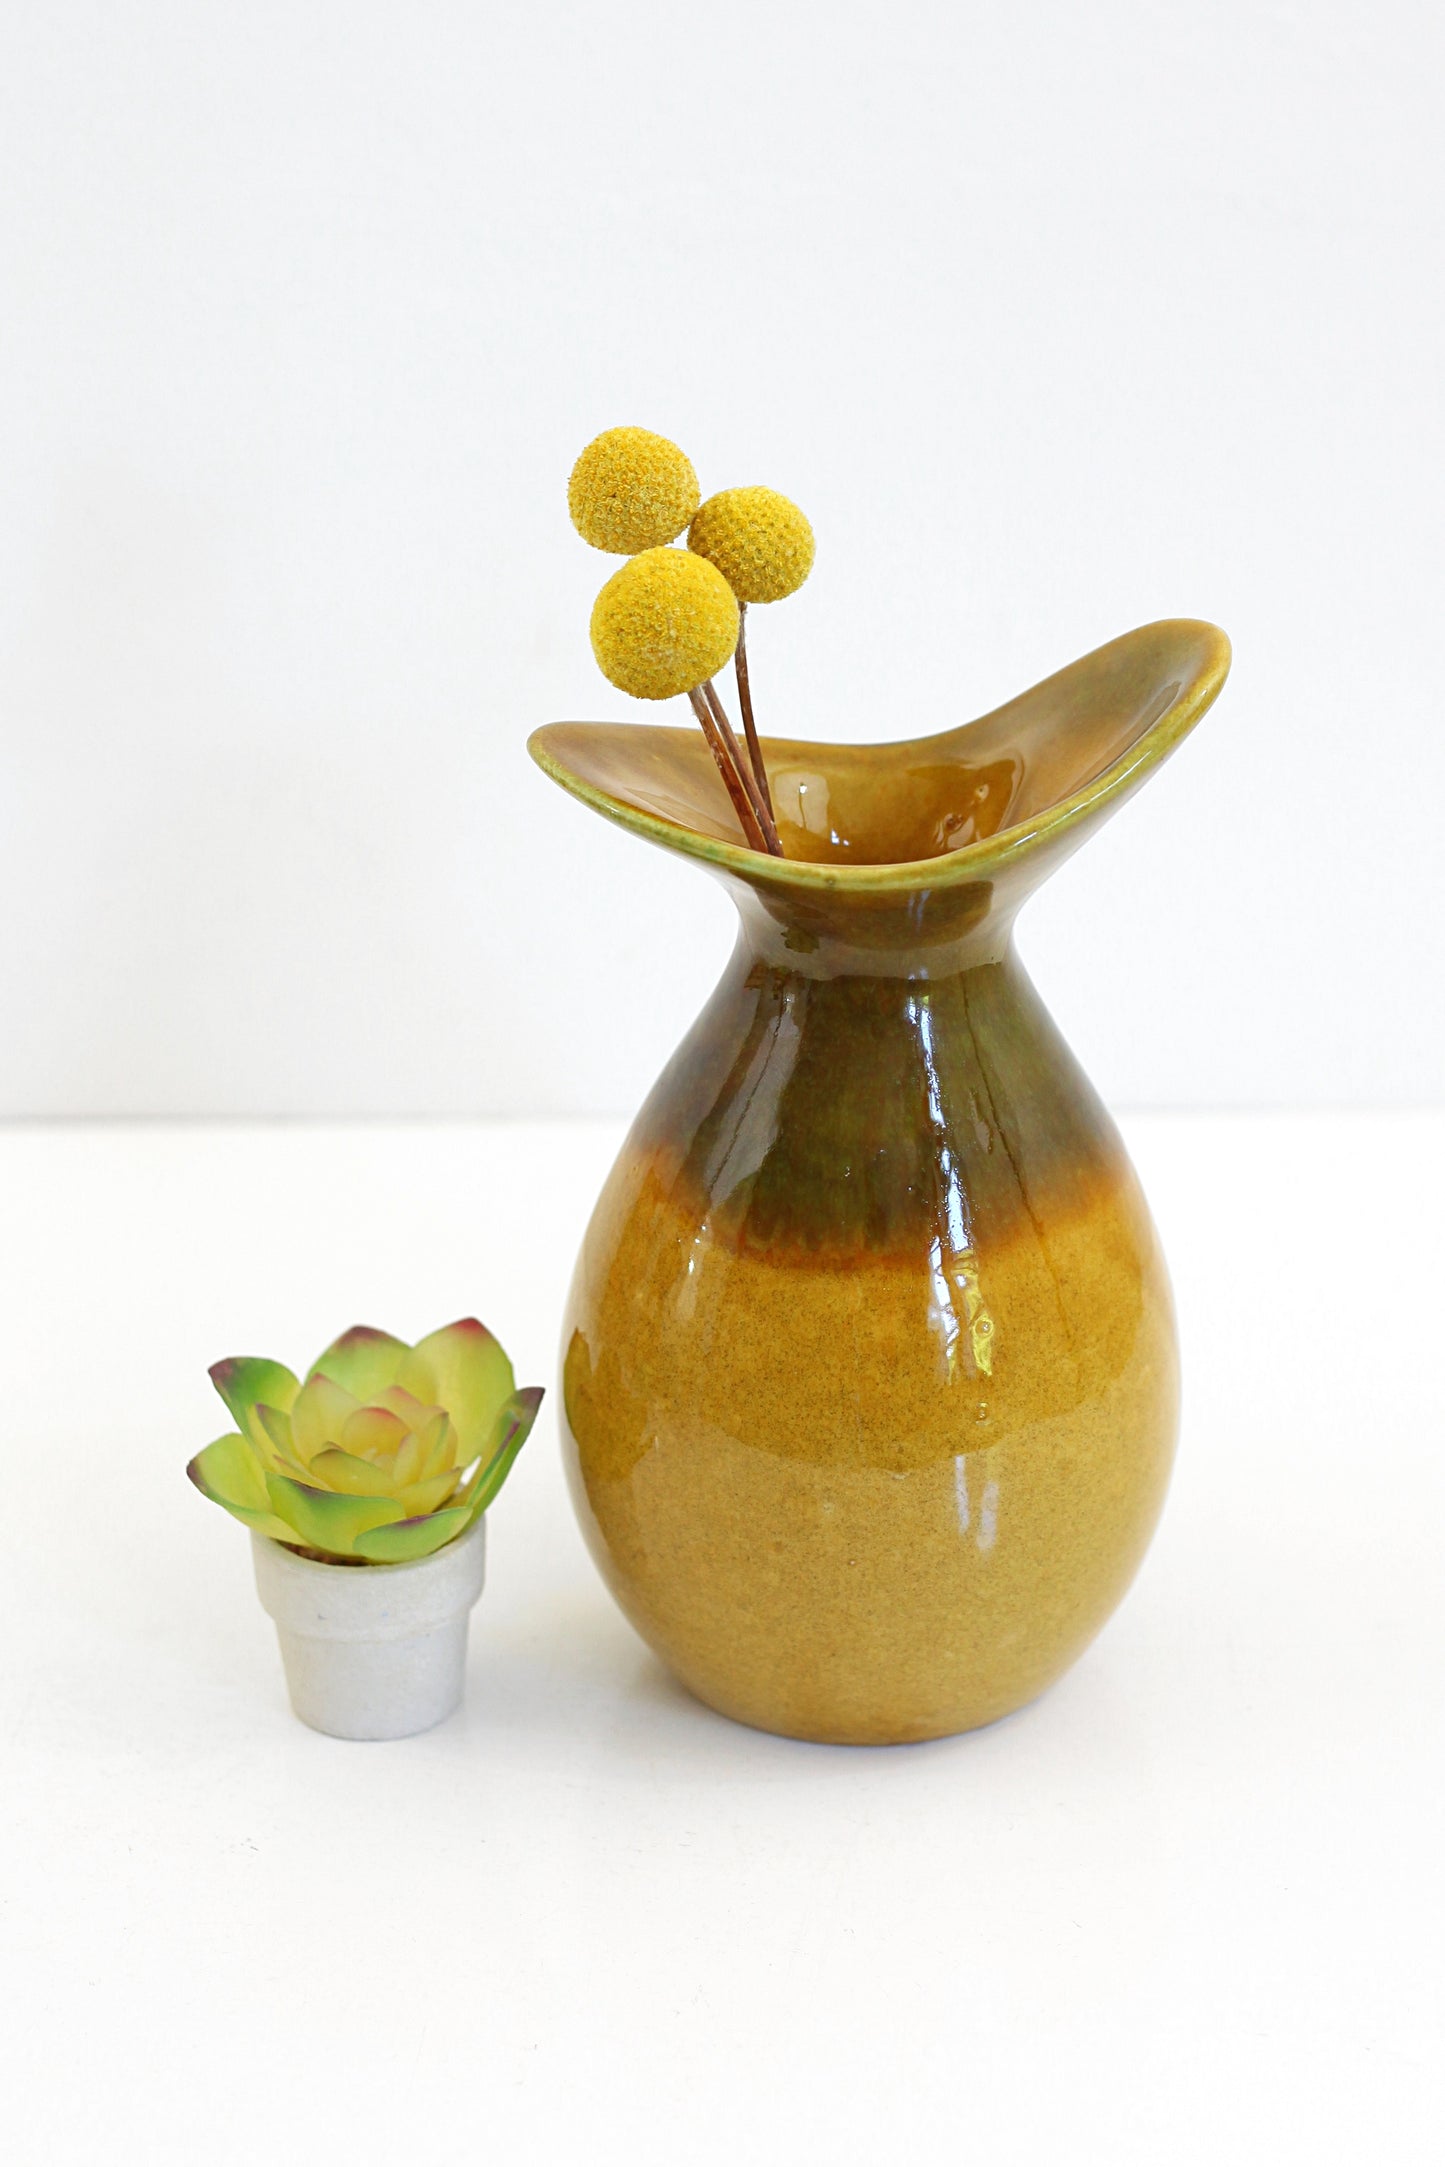 SOLD - Mid Century Mustard Biomorphic Art Pottery Vase